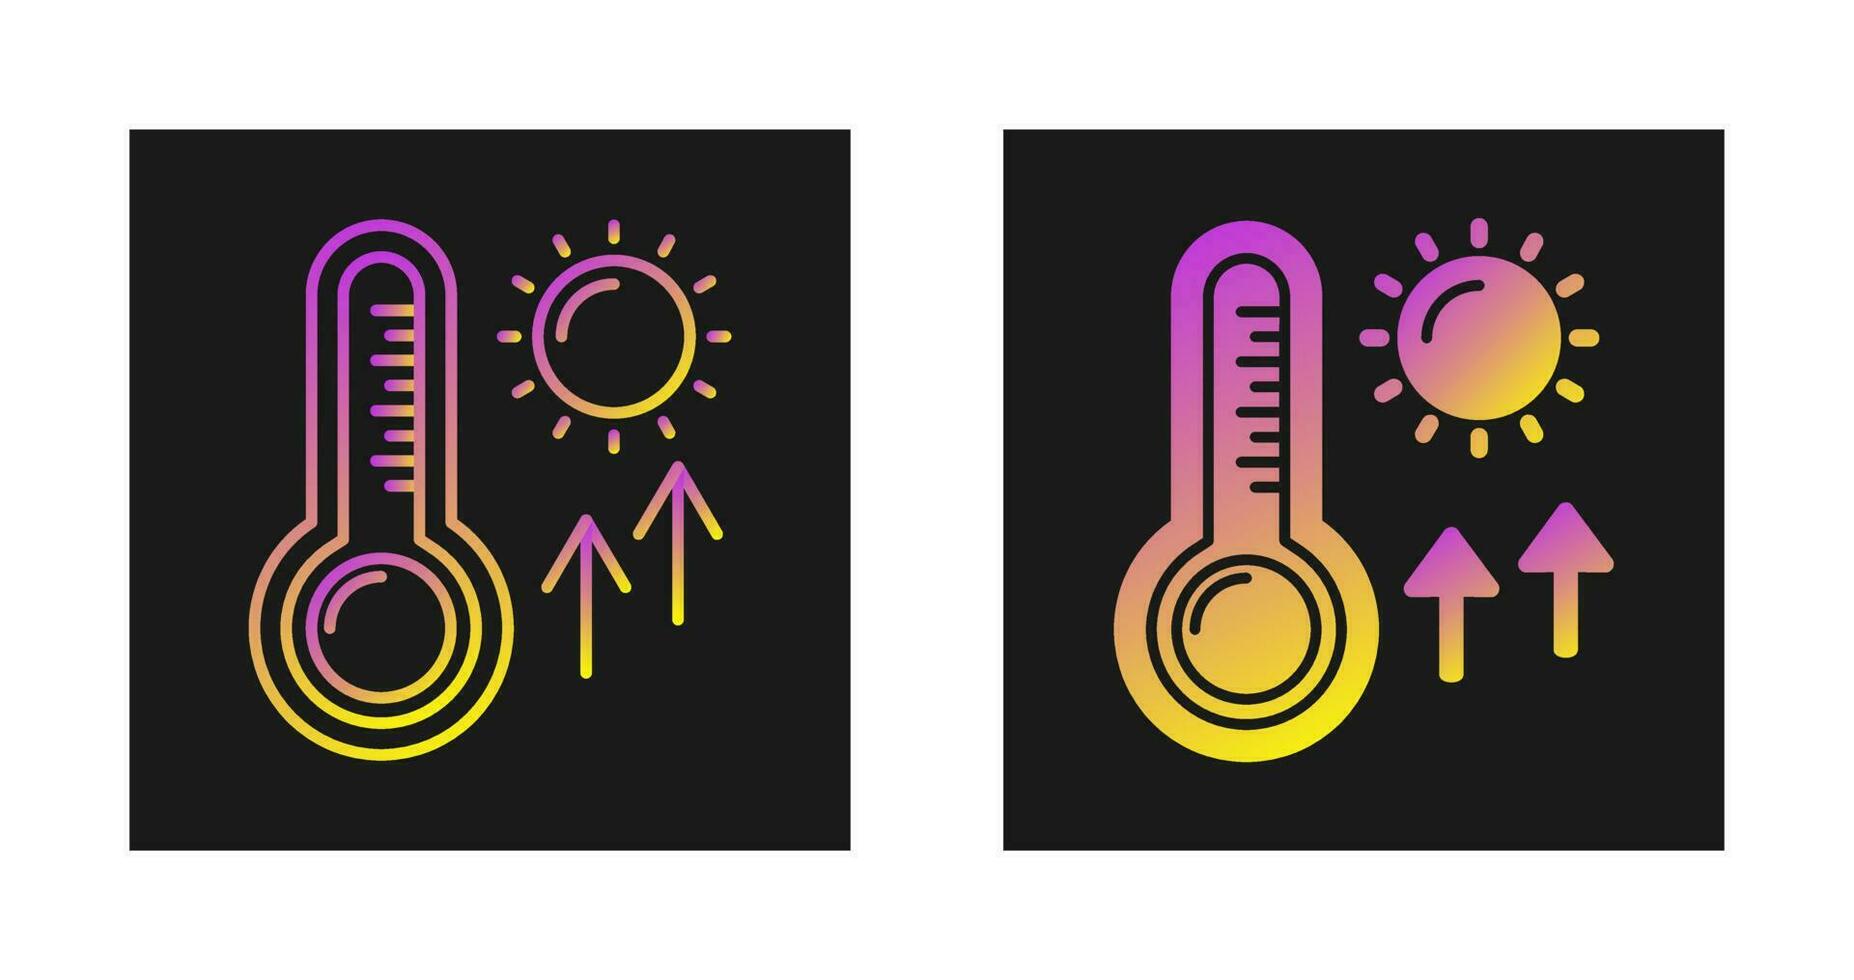 icône de vecteur de hautes températures